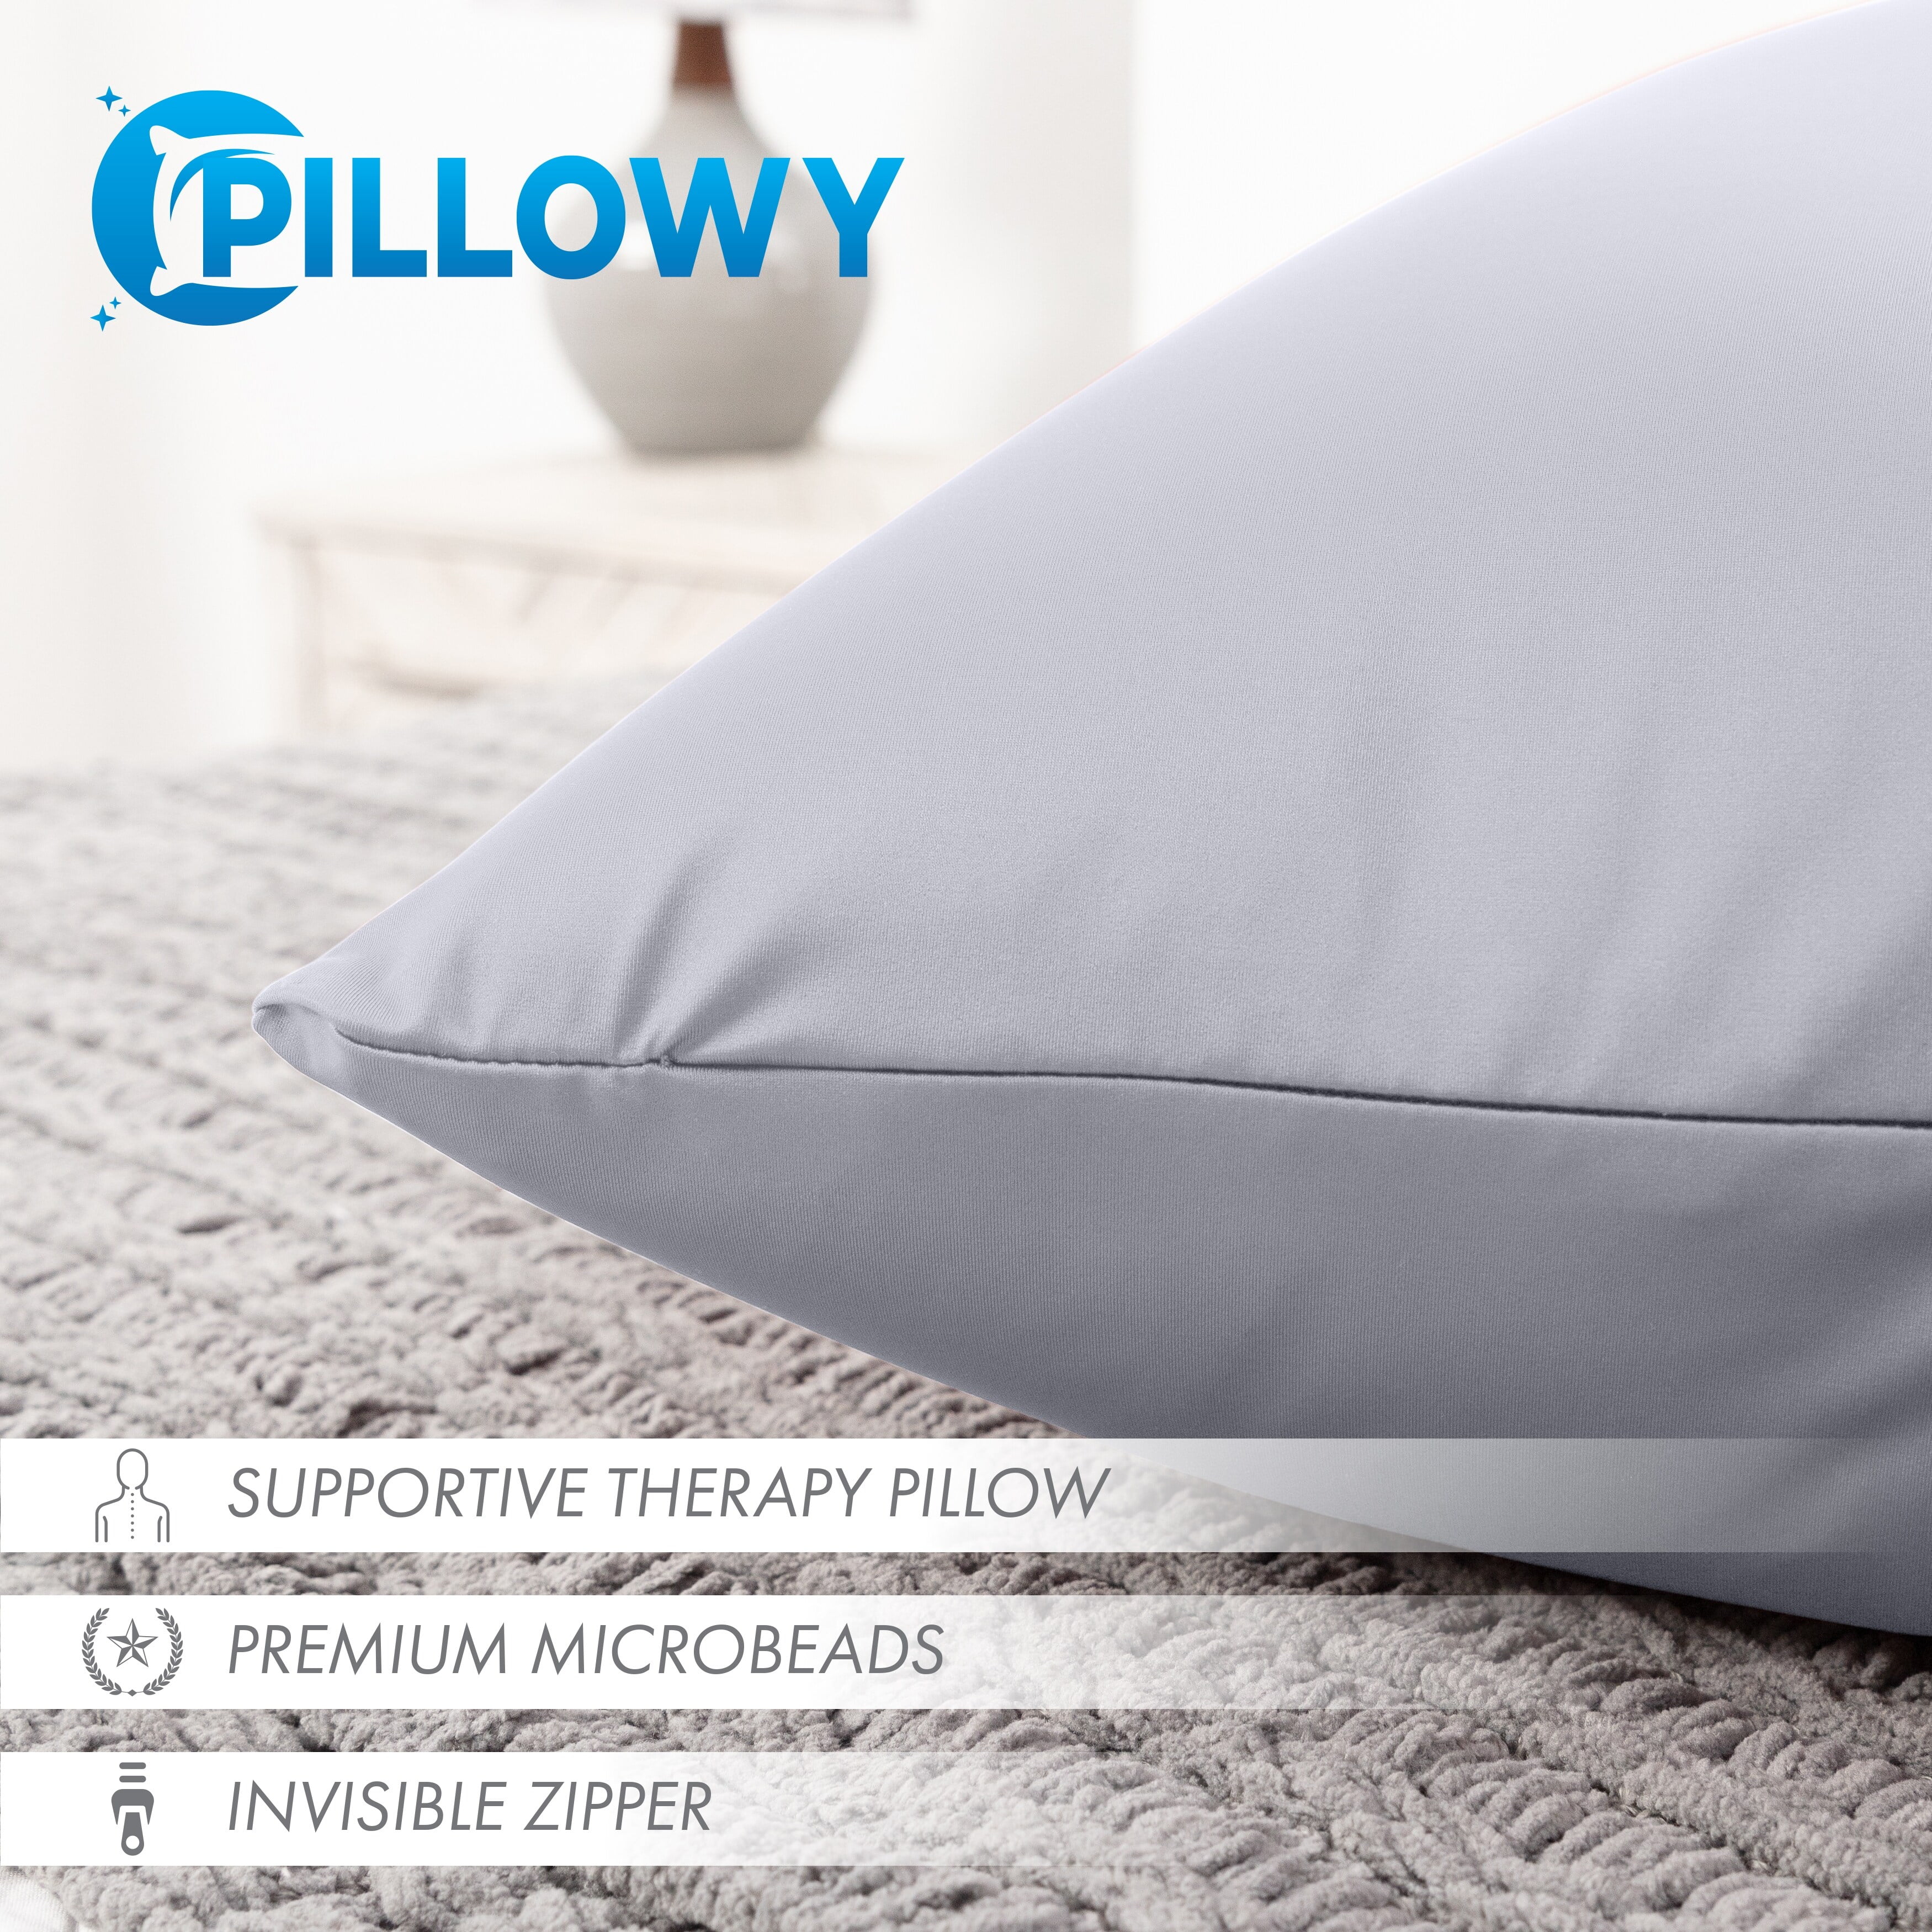 PILLOWY Pillow Insert